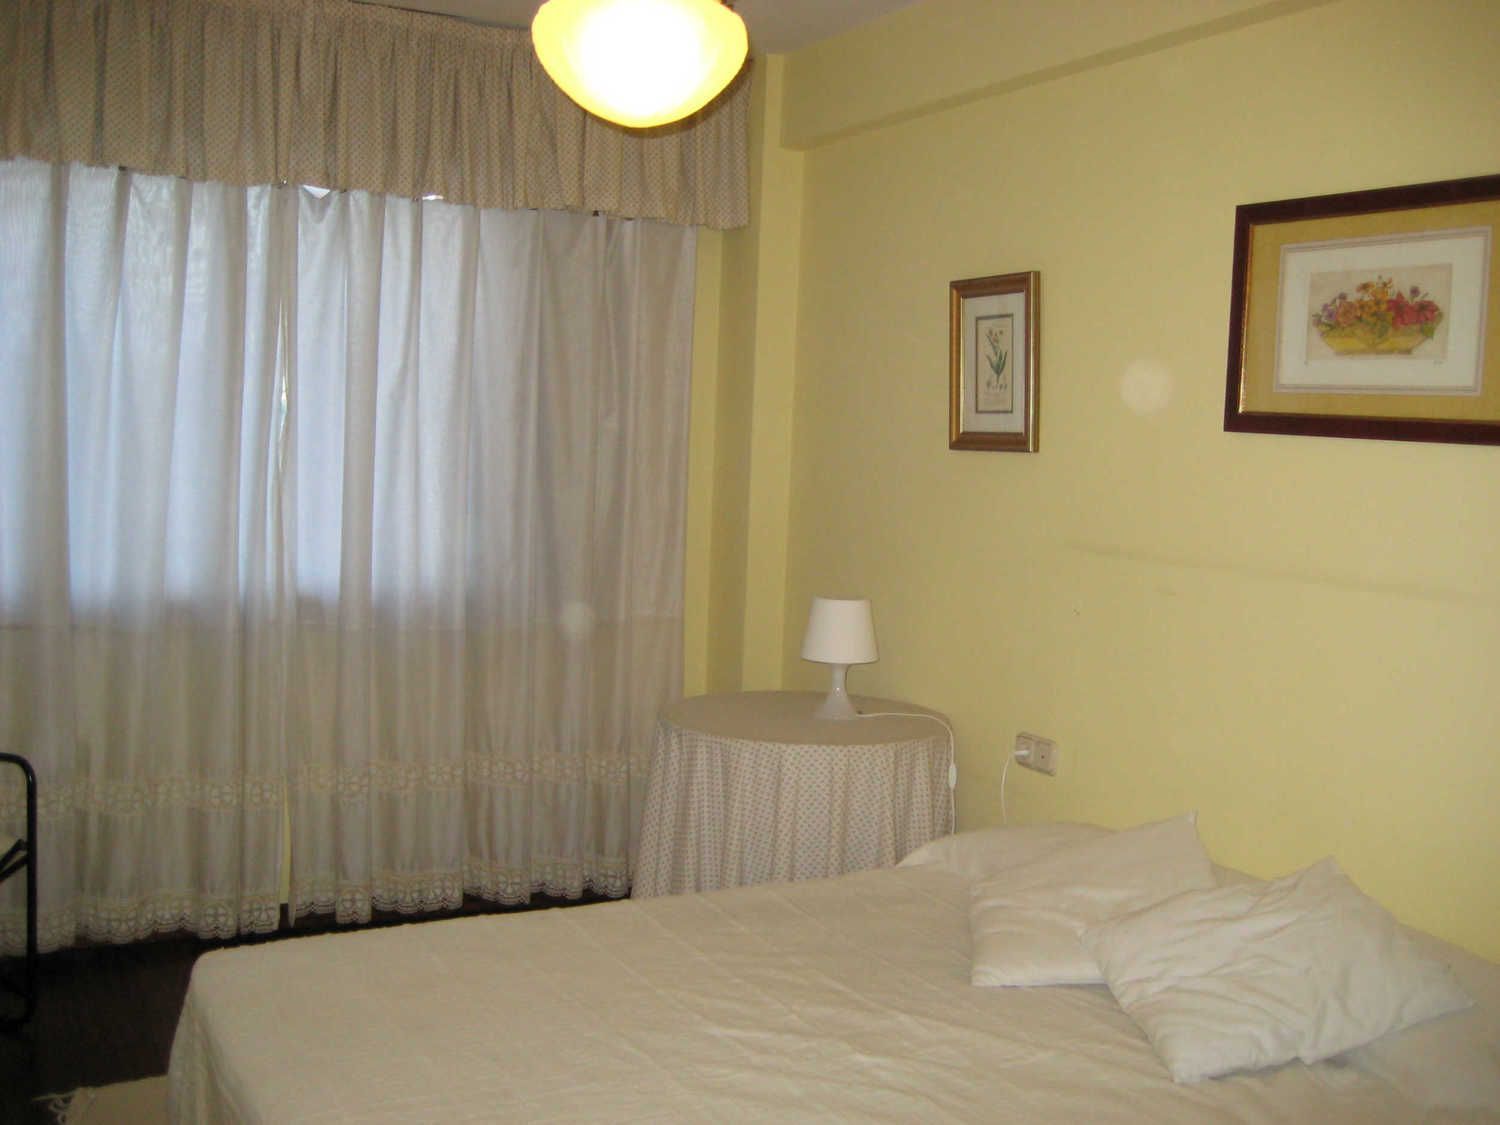 Apartamento en venta en primera línea de mar en av Coira, en Porto do Son